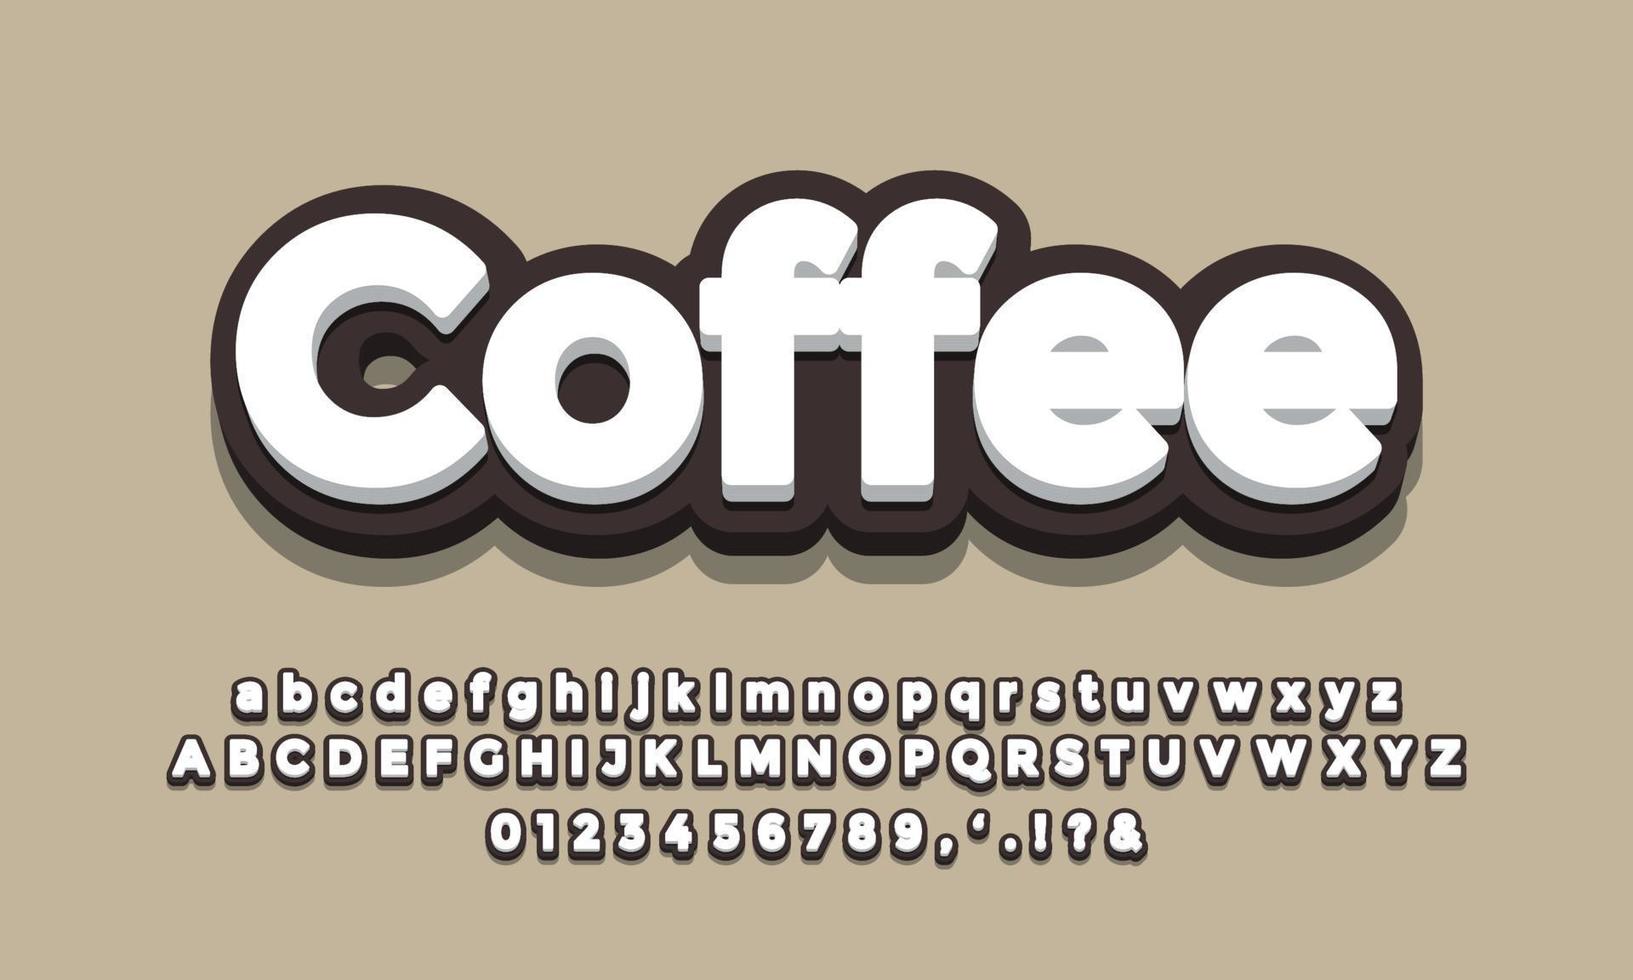 svart kaffe teckensnittseffekt eller texteffektdesign vektor